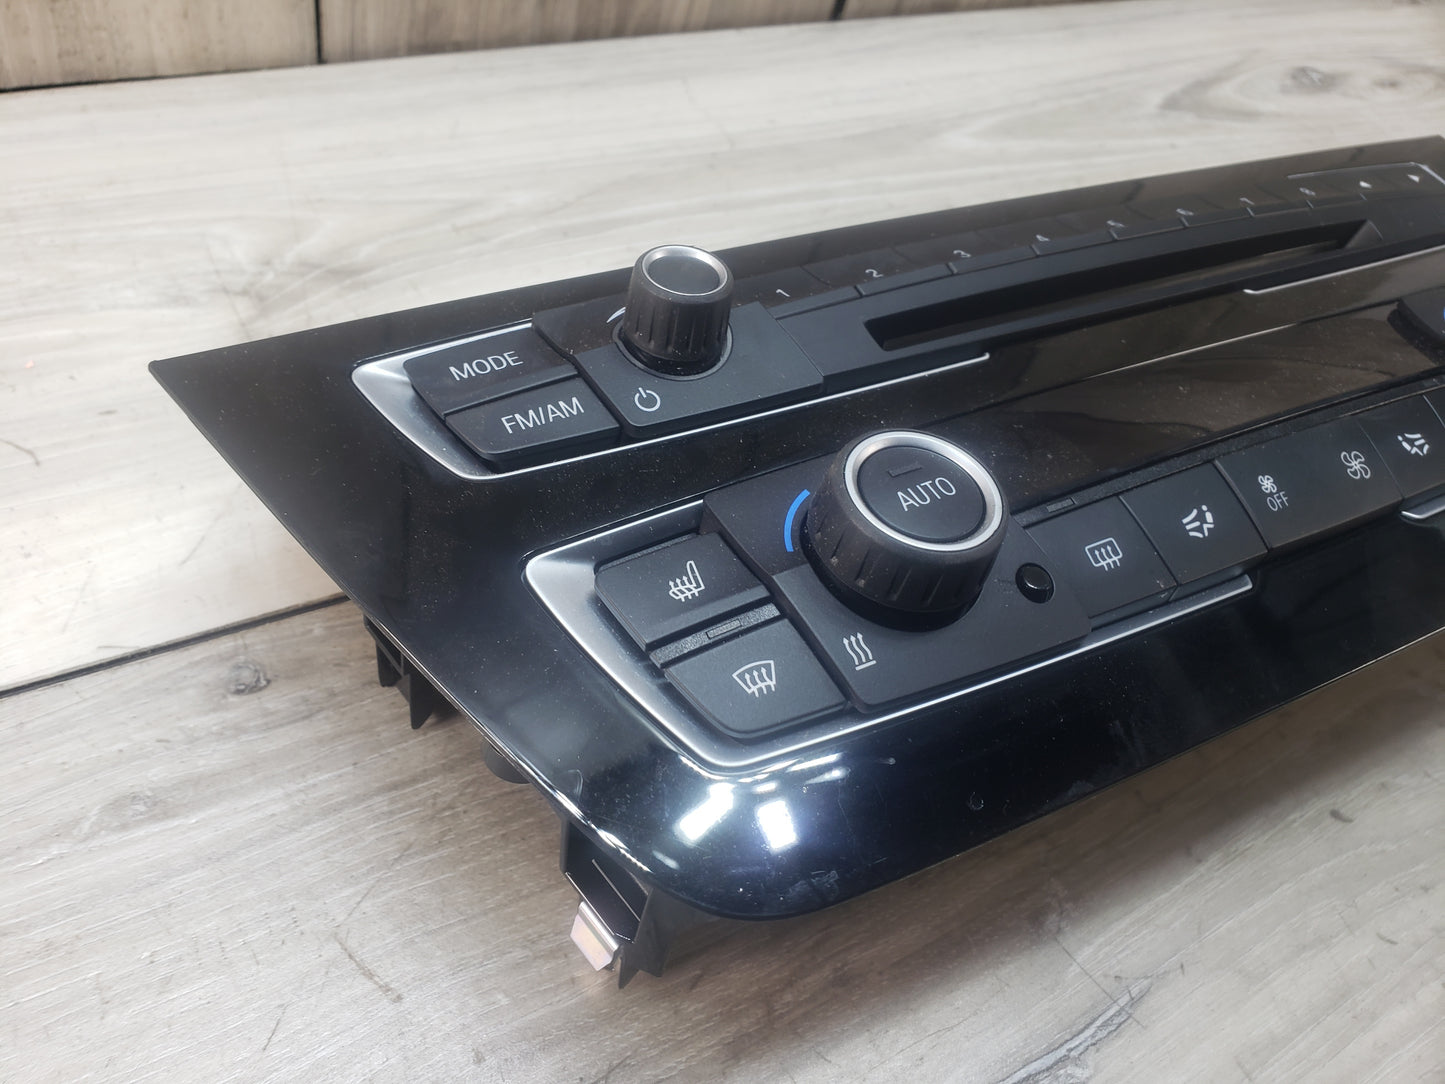 12-18 OEM BMW F80 F30 F32 F36 M3 M4 AC Heater Control Panel Radio Media Buttons